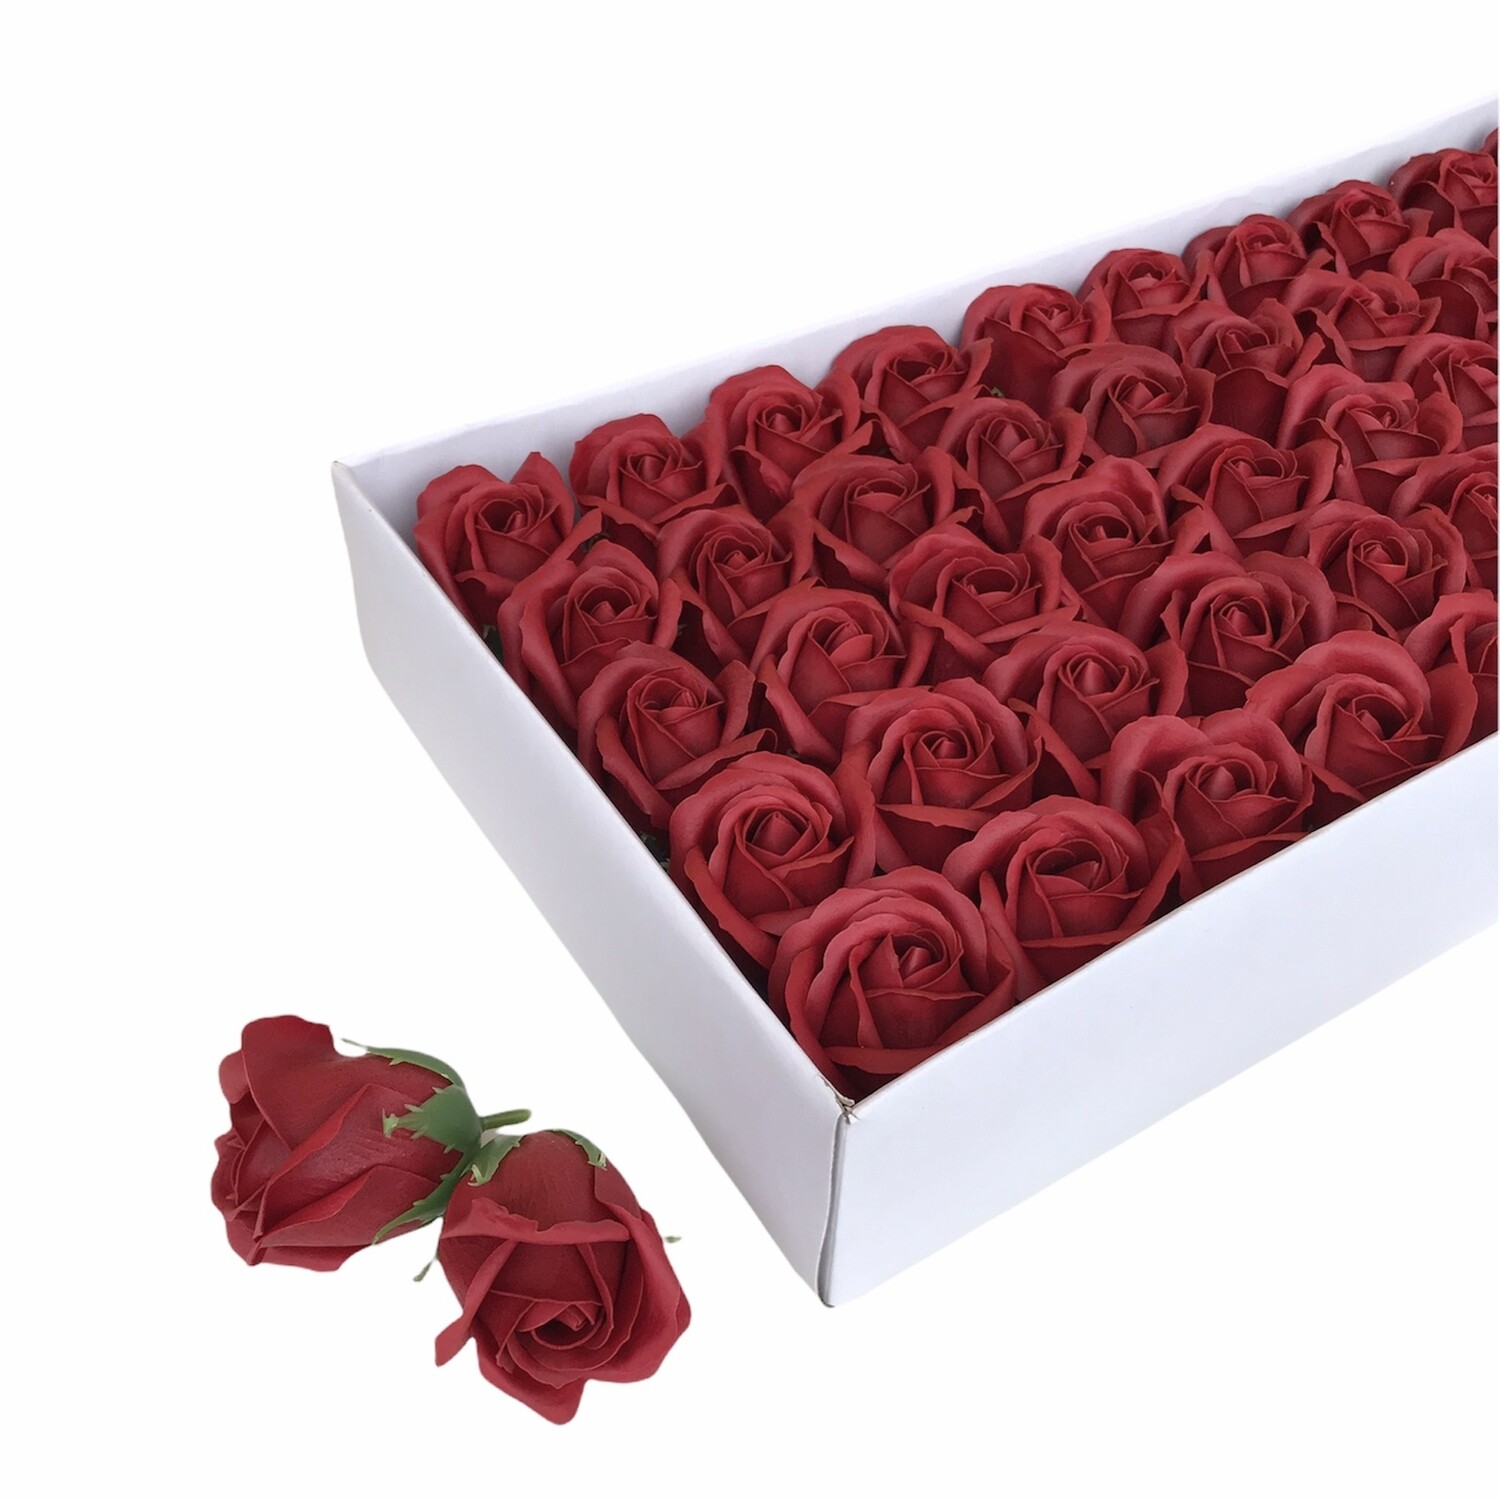 Мыльные розы, цвет - БОРДО, размер 5х5 см, в упаковке 50 шт